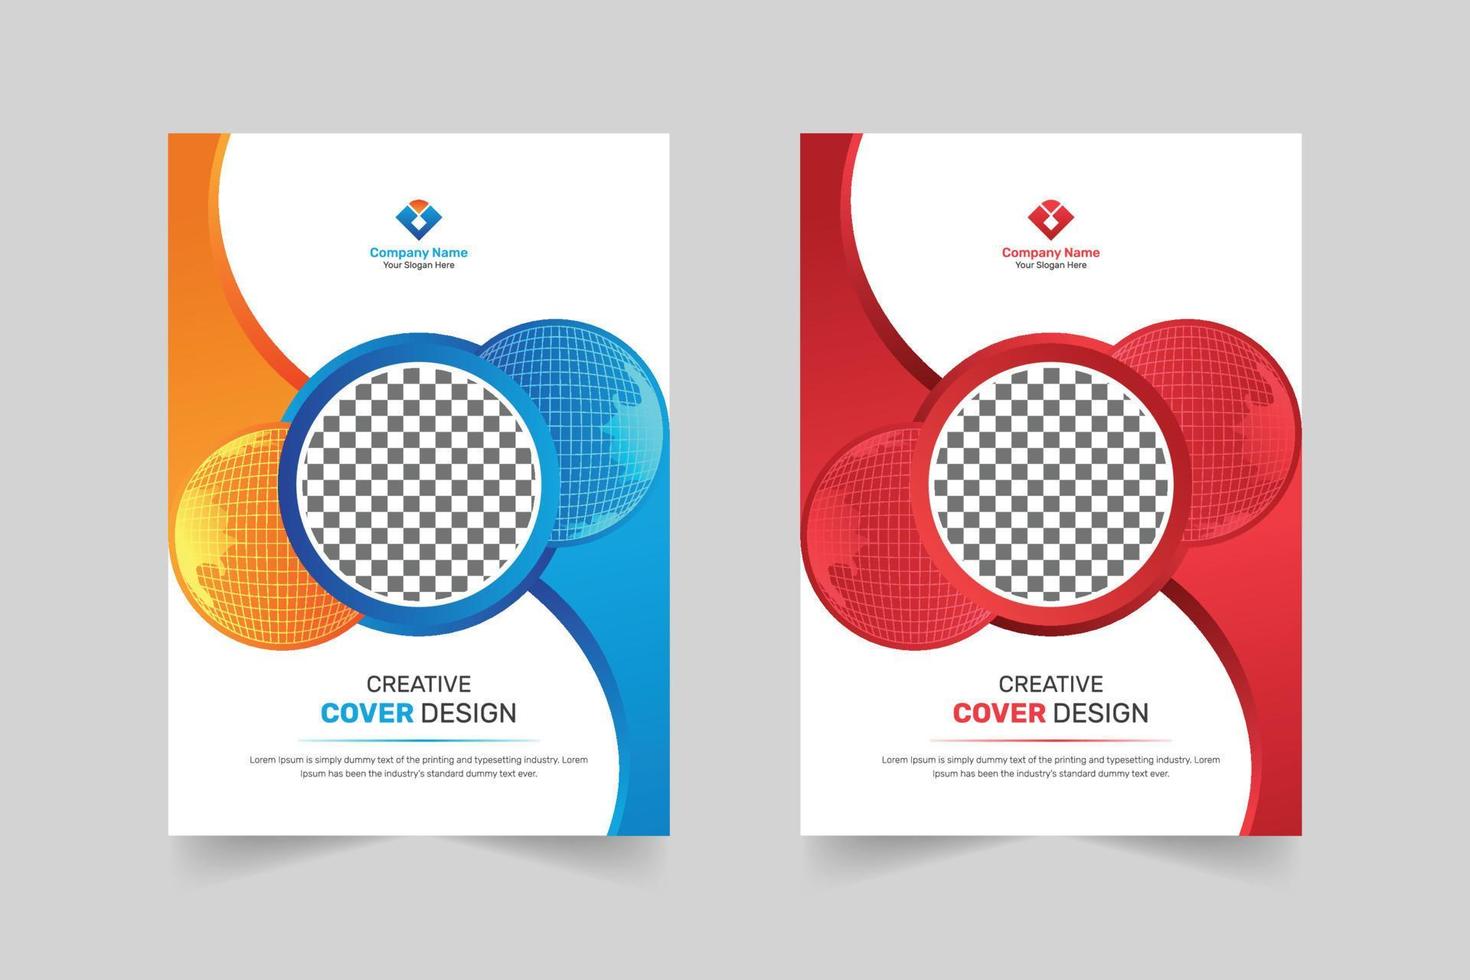 plantilla de diseño de portada de negocio corporativo creativo en a4 para folleto, informe anual, afiche, volante, folleto, pancarta vector